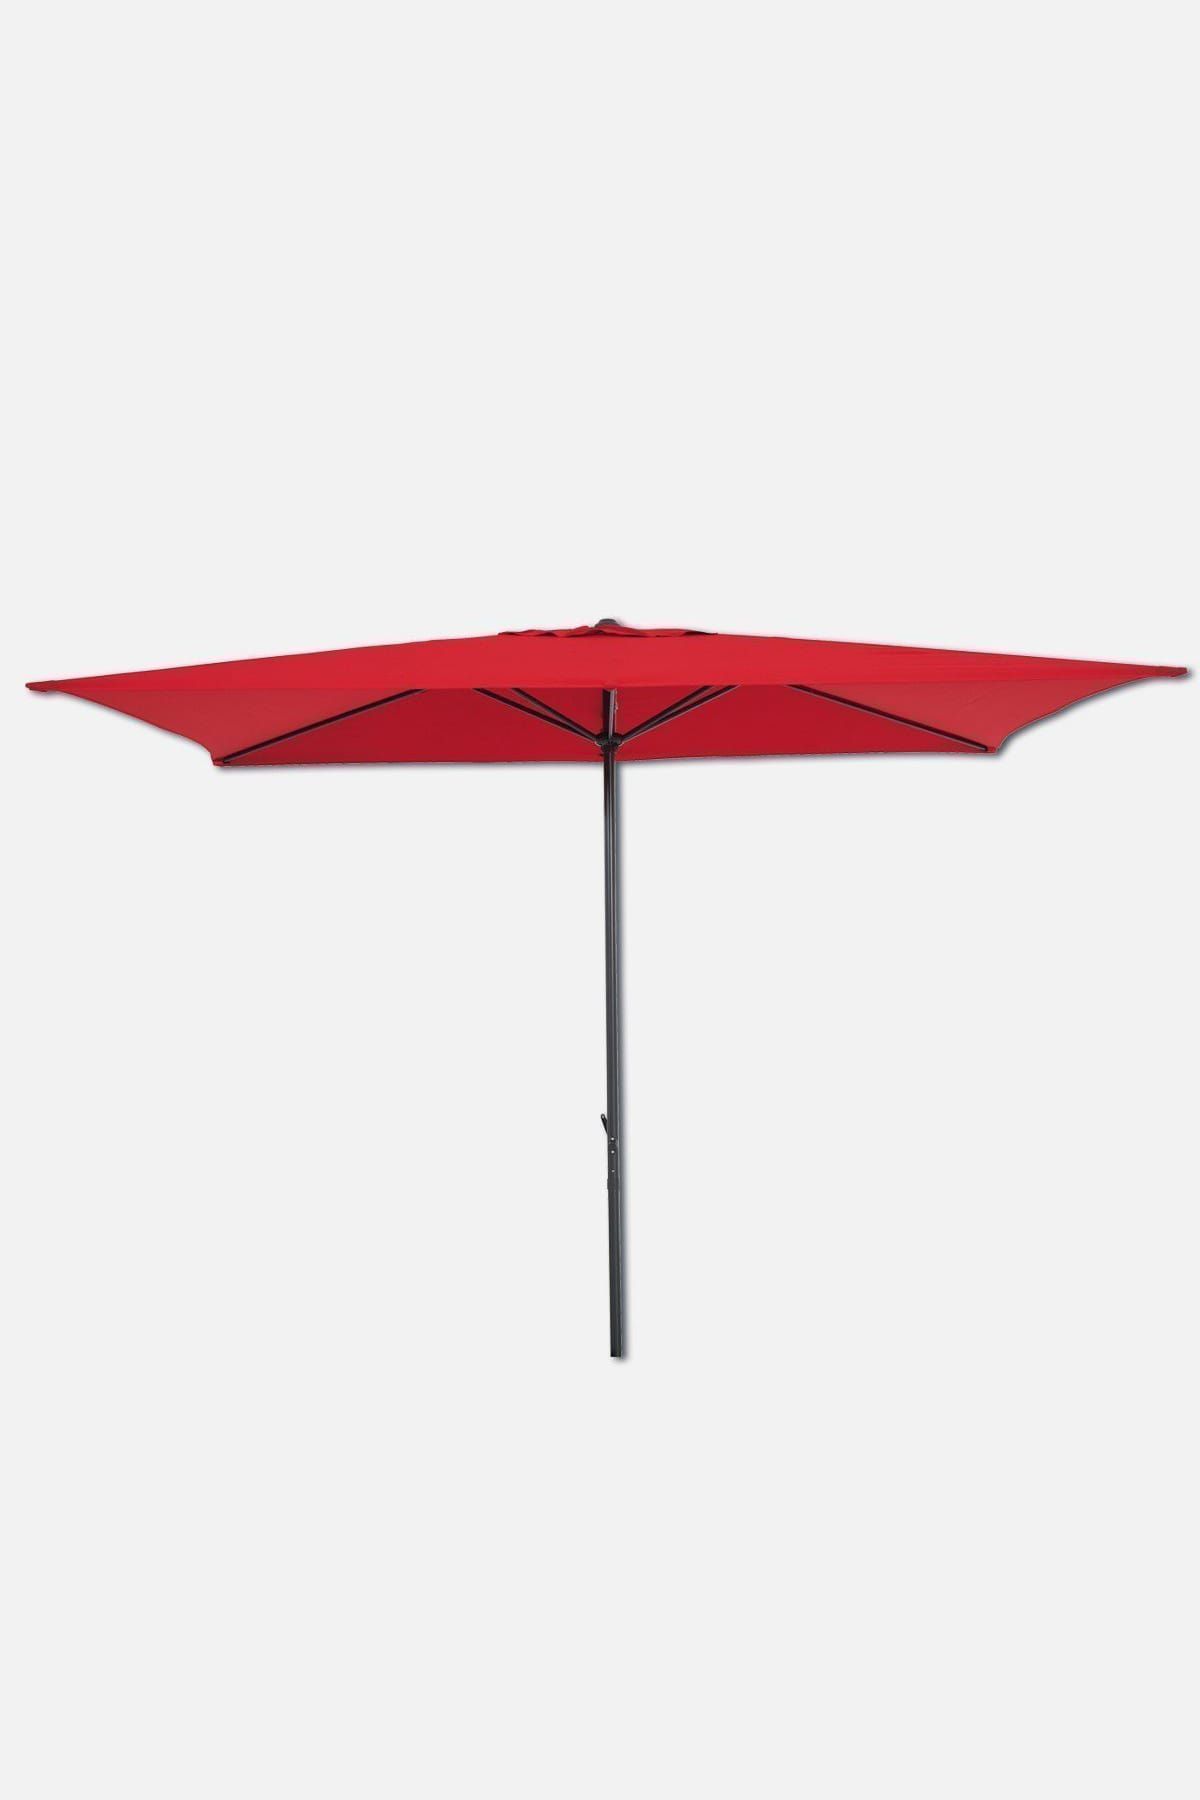 Sunfun Bahçe Şemsiyesi 250x200cm Kırmızı